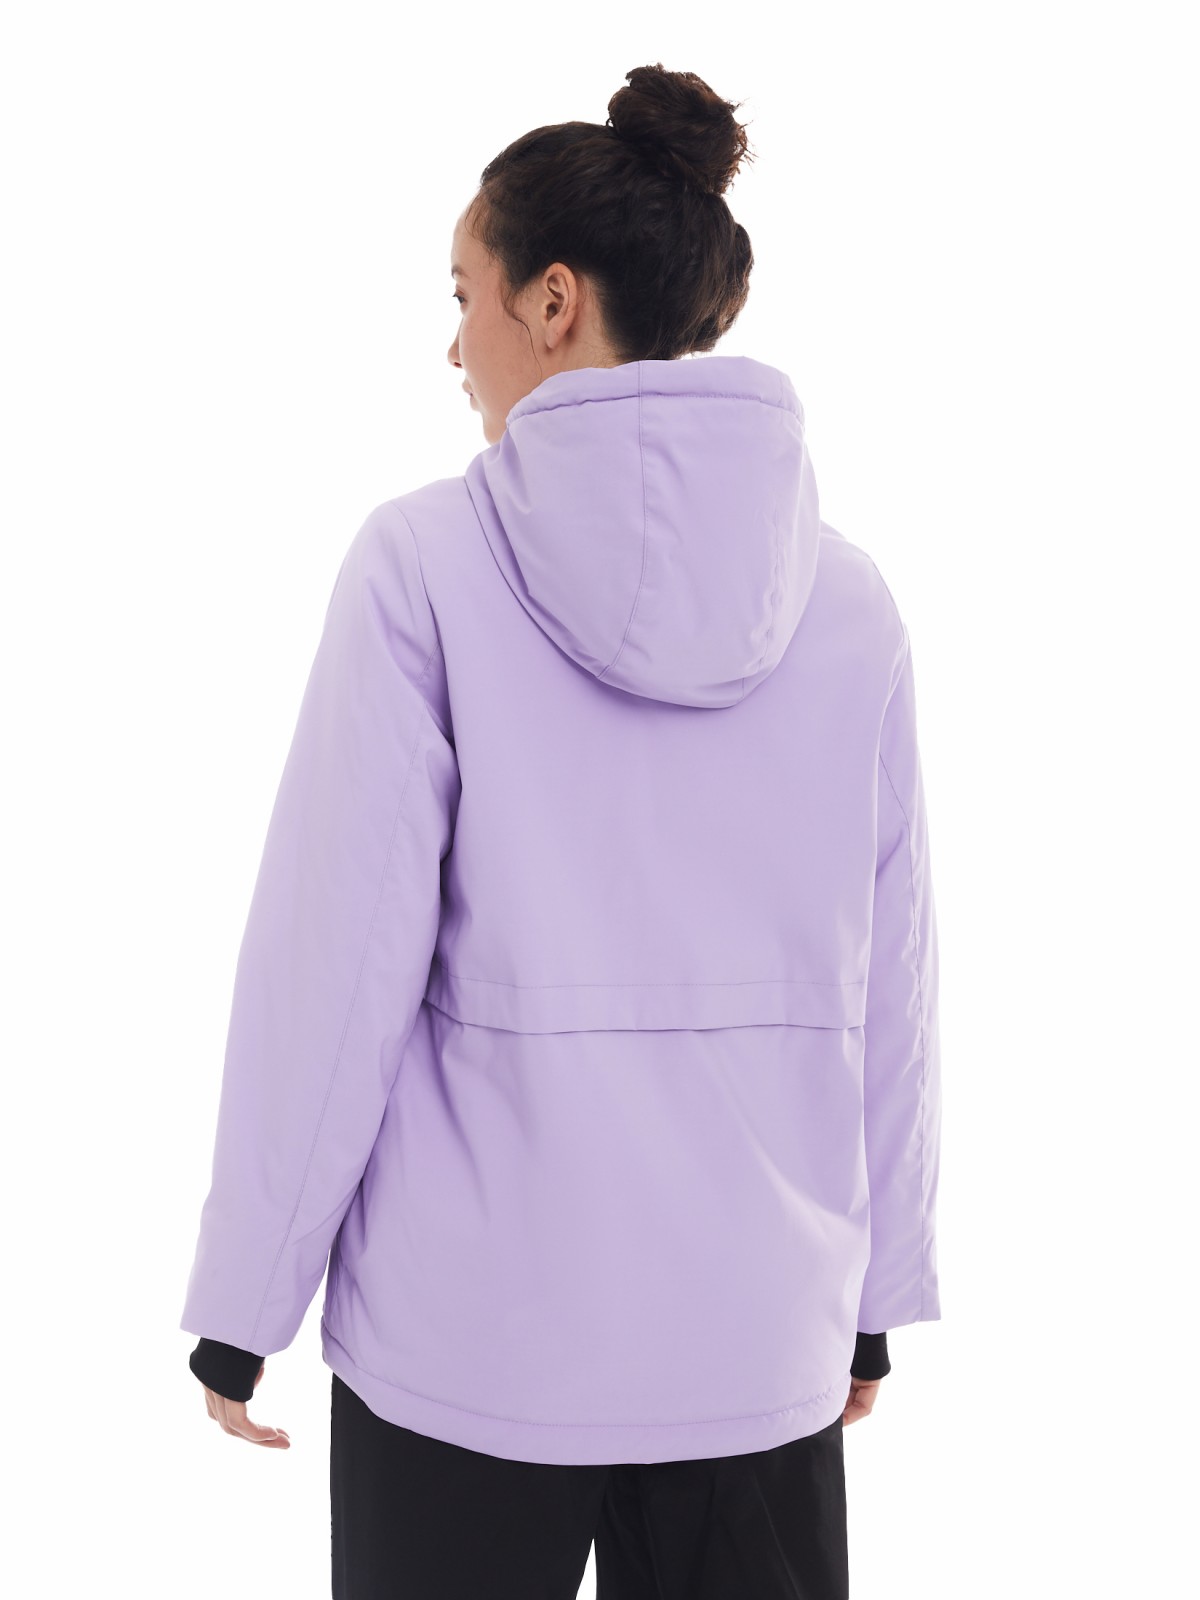 Утеплённая куртка на молнии с капюшоном zolla 024125102144, цвет лиловый, размер XS - фото 6